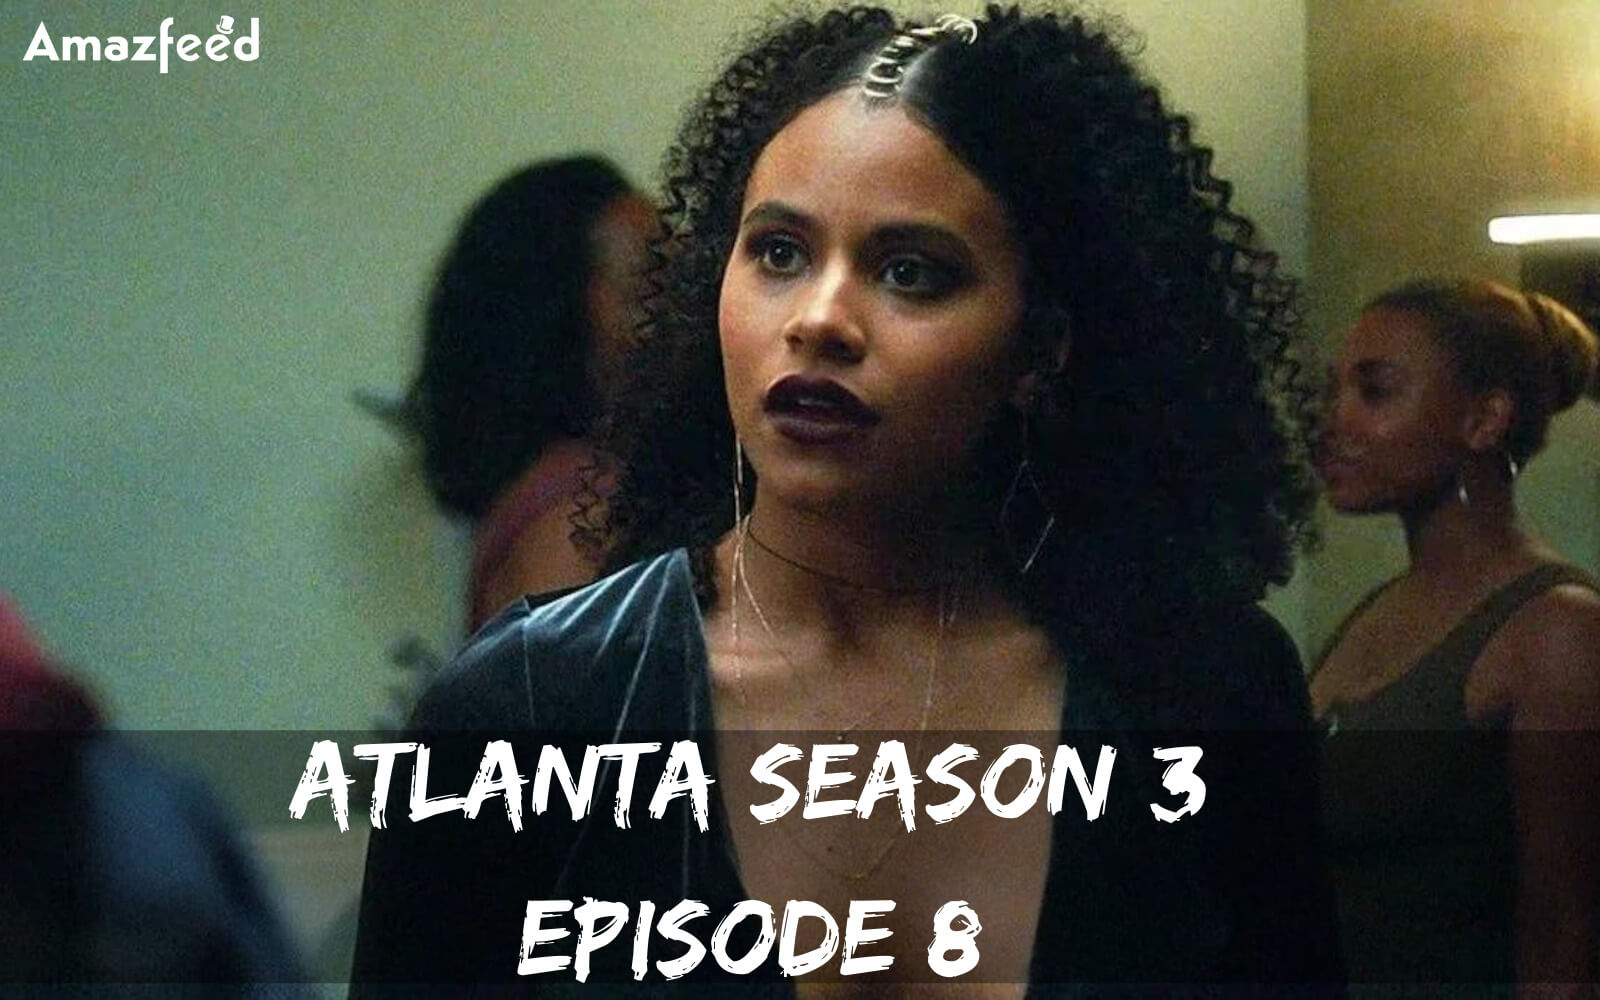 Atlanta Season 3 Episode 8 release date